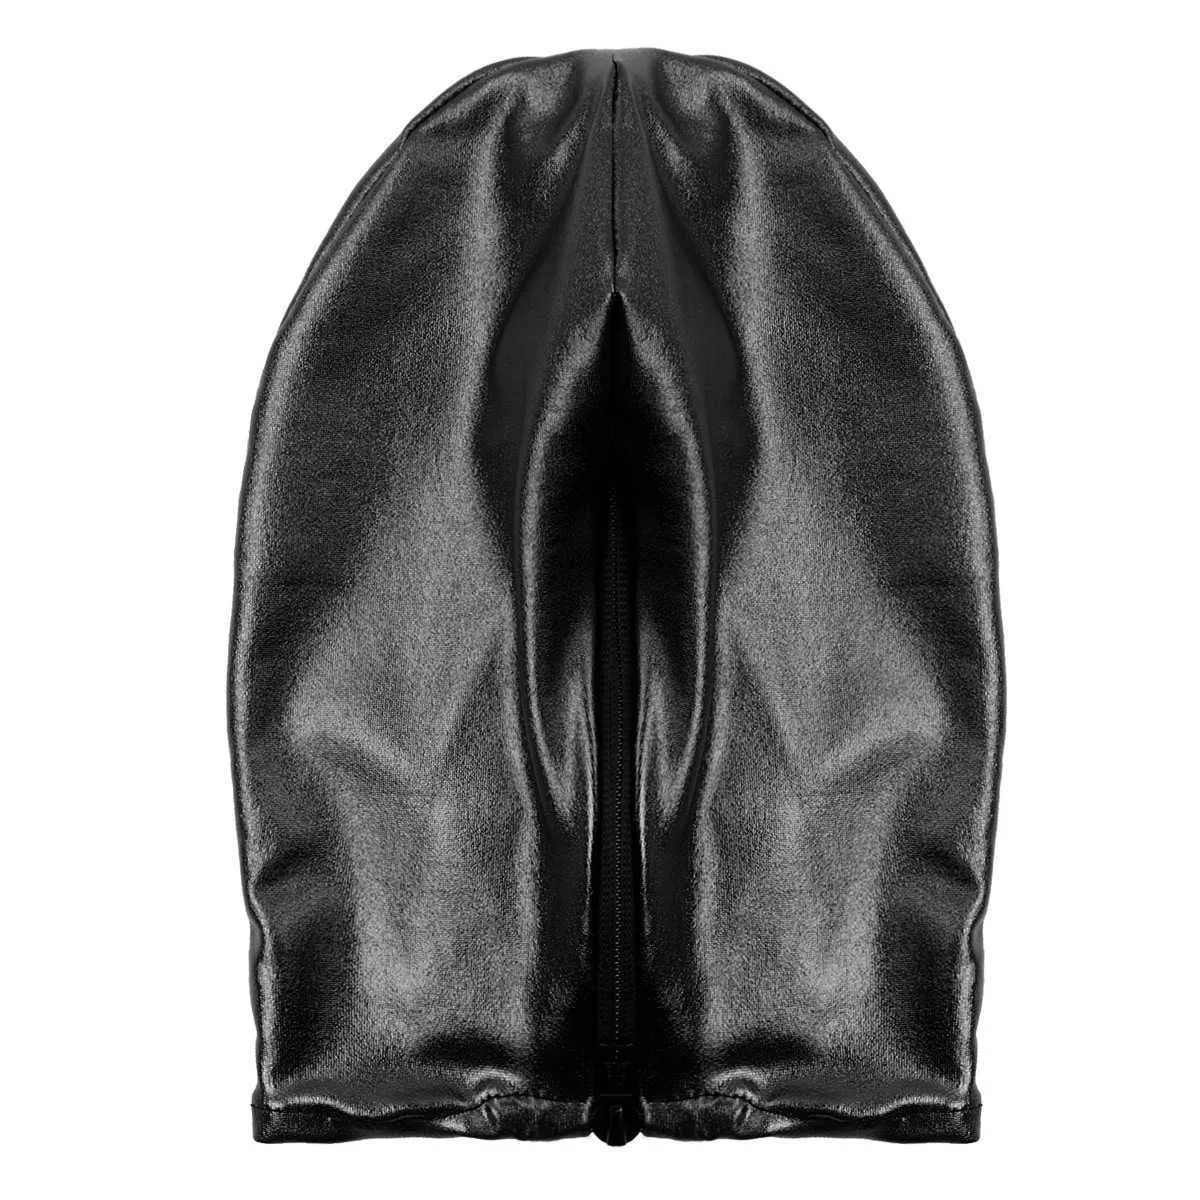 Sexy Unisexe Men Femmes Cosplay Face Mask Hood pour le jeu de rôle Costume Latex brillant métallique ouverte de bouche ouverte Headgear Full Face Mask Q01901863